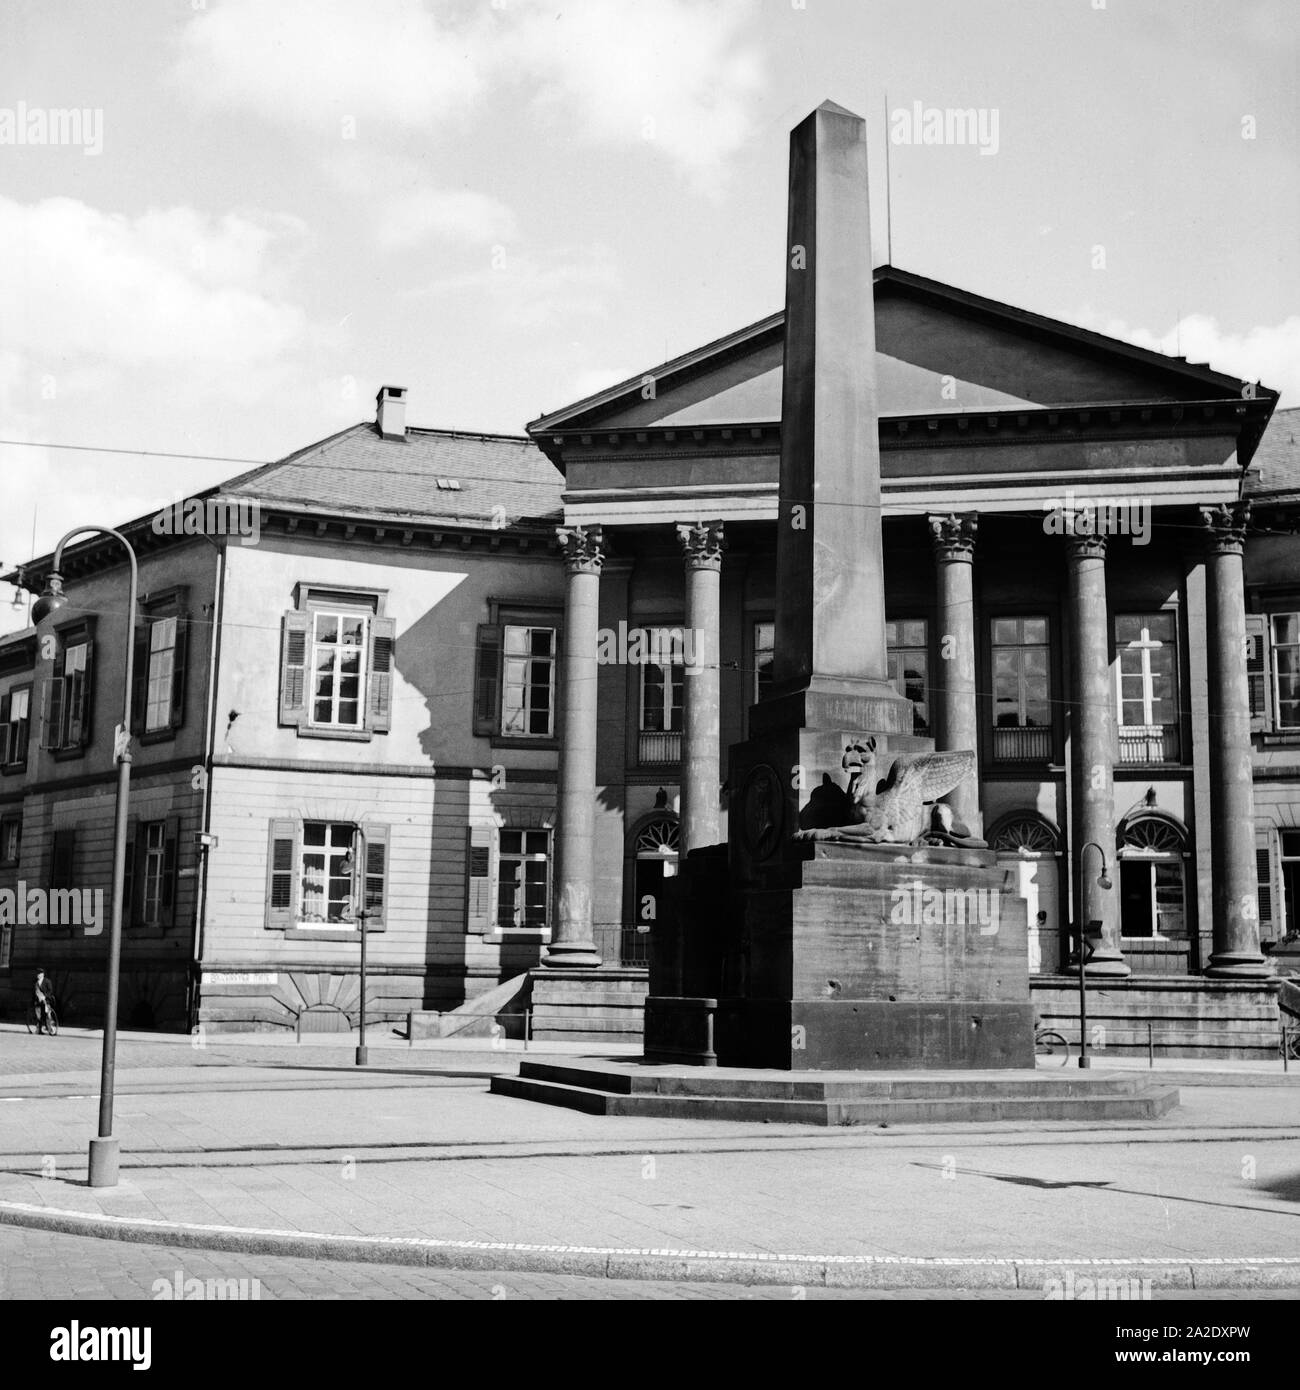 Die Verfassungssäule auf dem Rondellplatz a Karlsruhe, Deutschland 1930er Jahre. Costituzione colonna a Rondellplatz Square nella città di Karlsruhe, Germania 1930s. Foto Stock